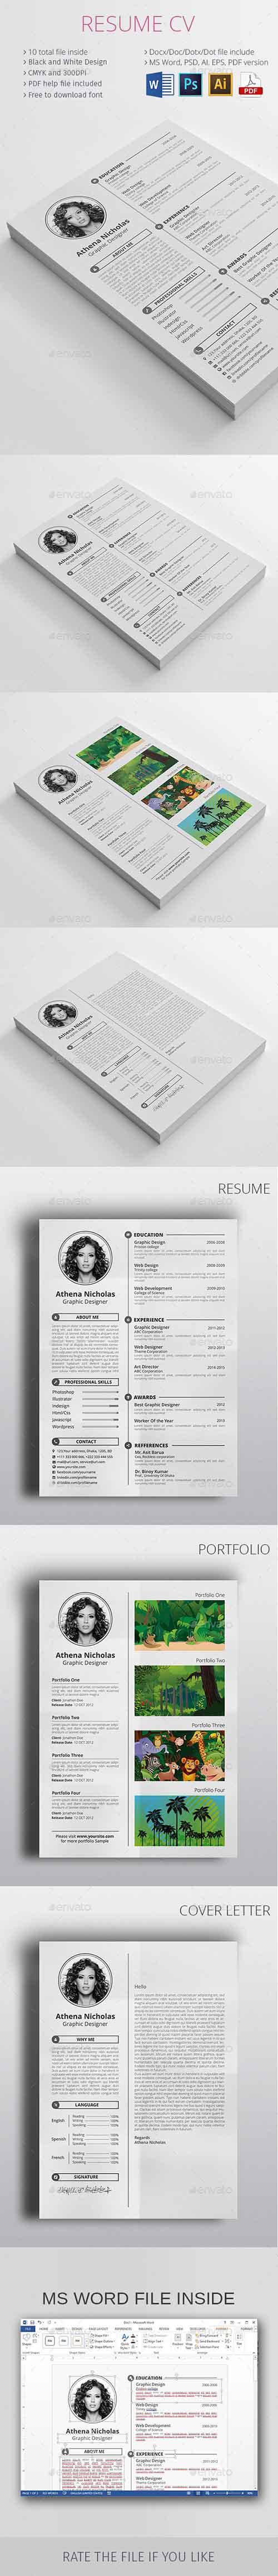 GraphicRiver: Resume CV